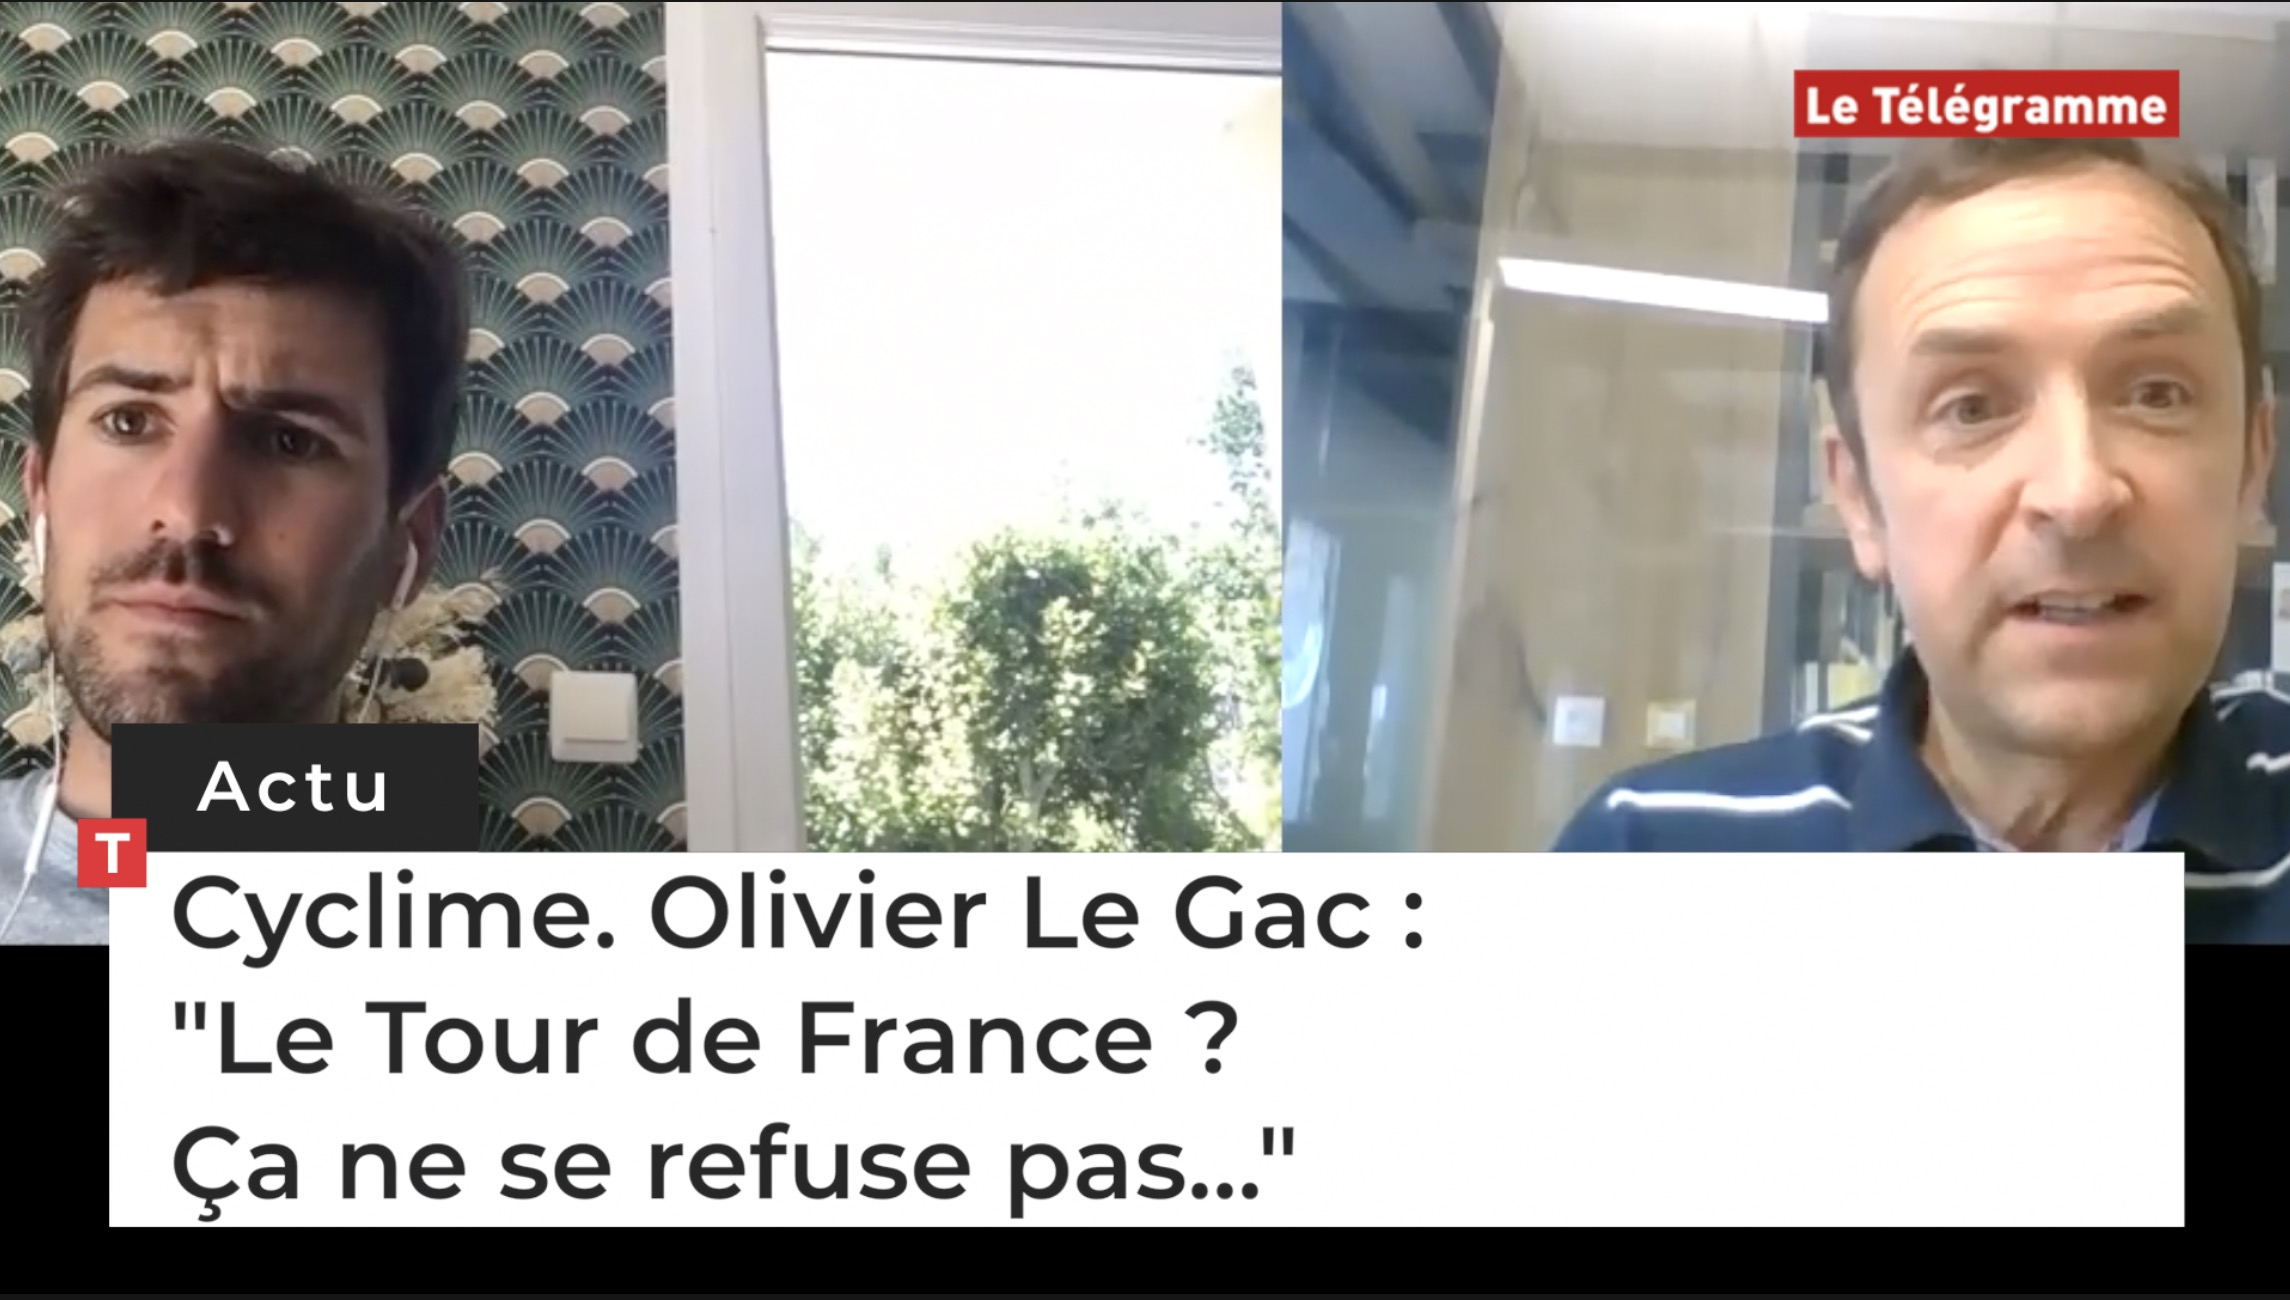 Olivier Le Gac : "Le Tour de France ? Ca ne se refuse pas..." (Le Télégramme)